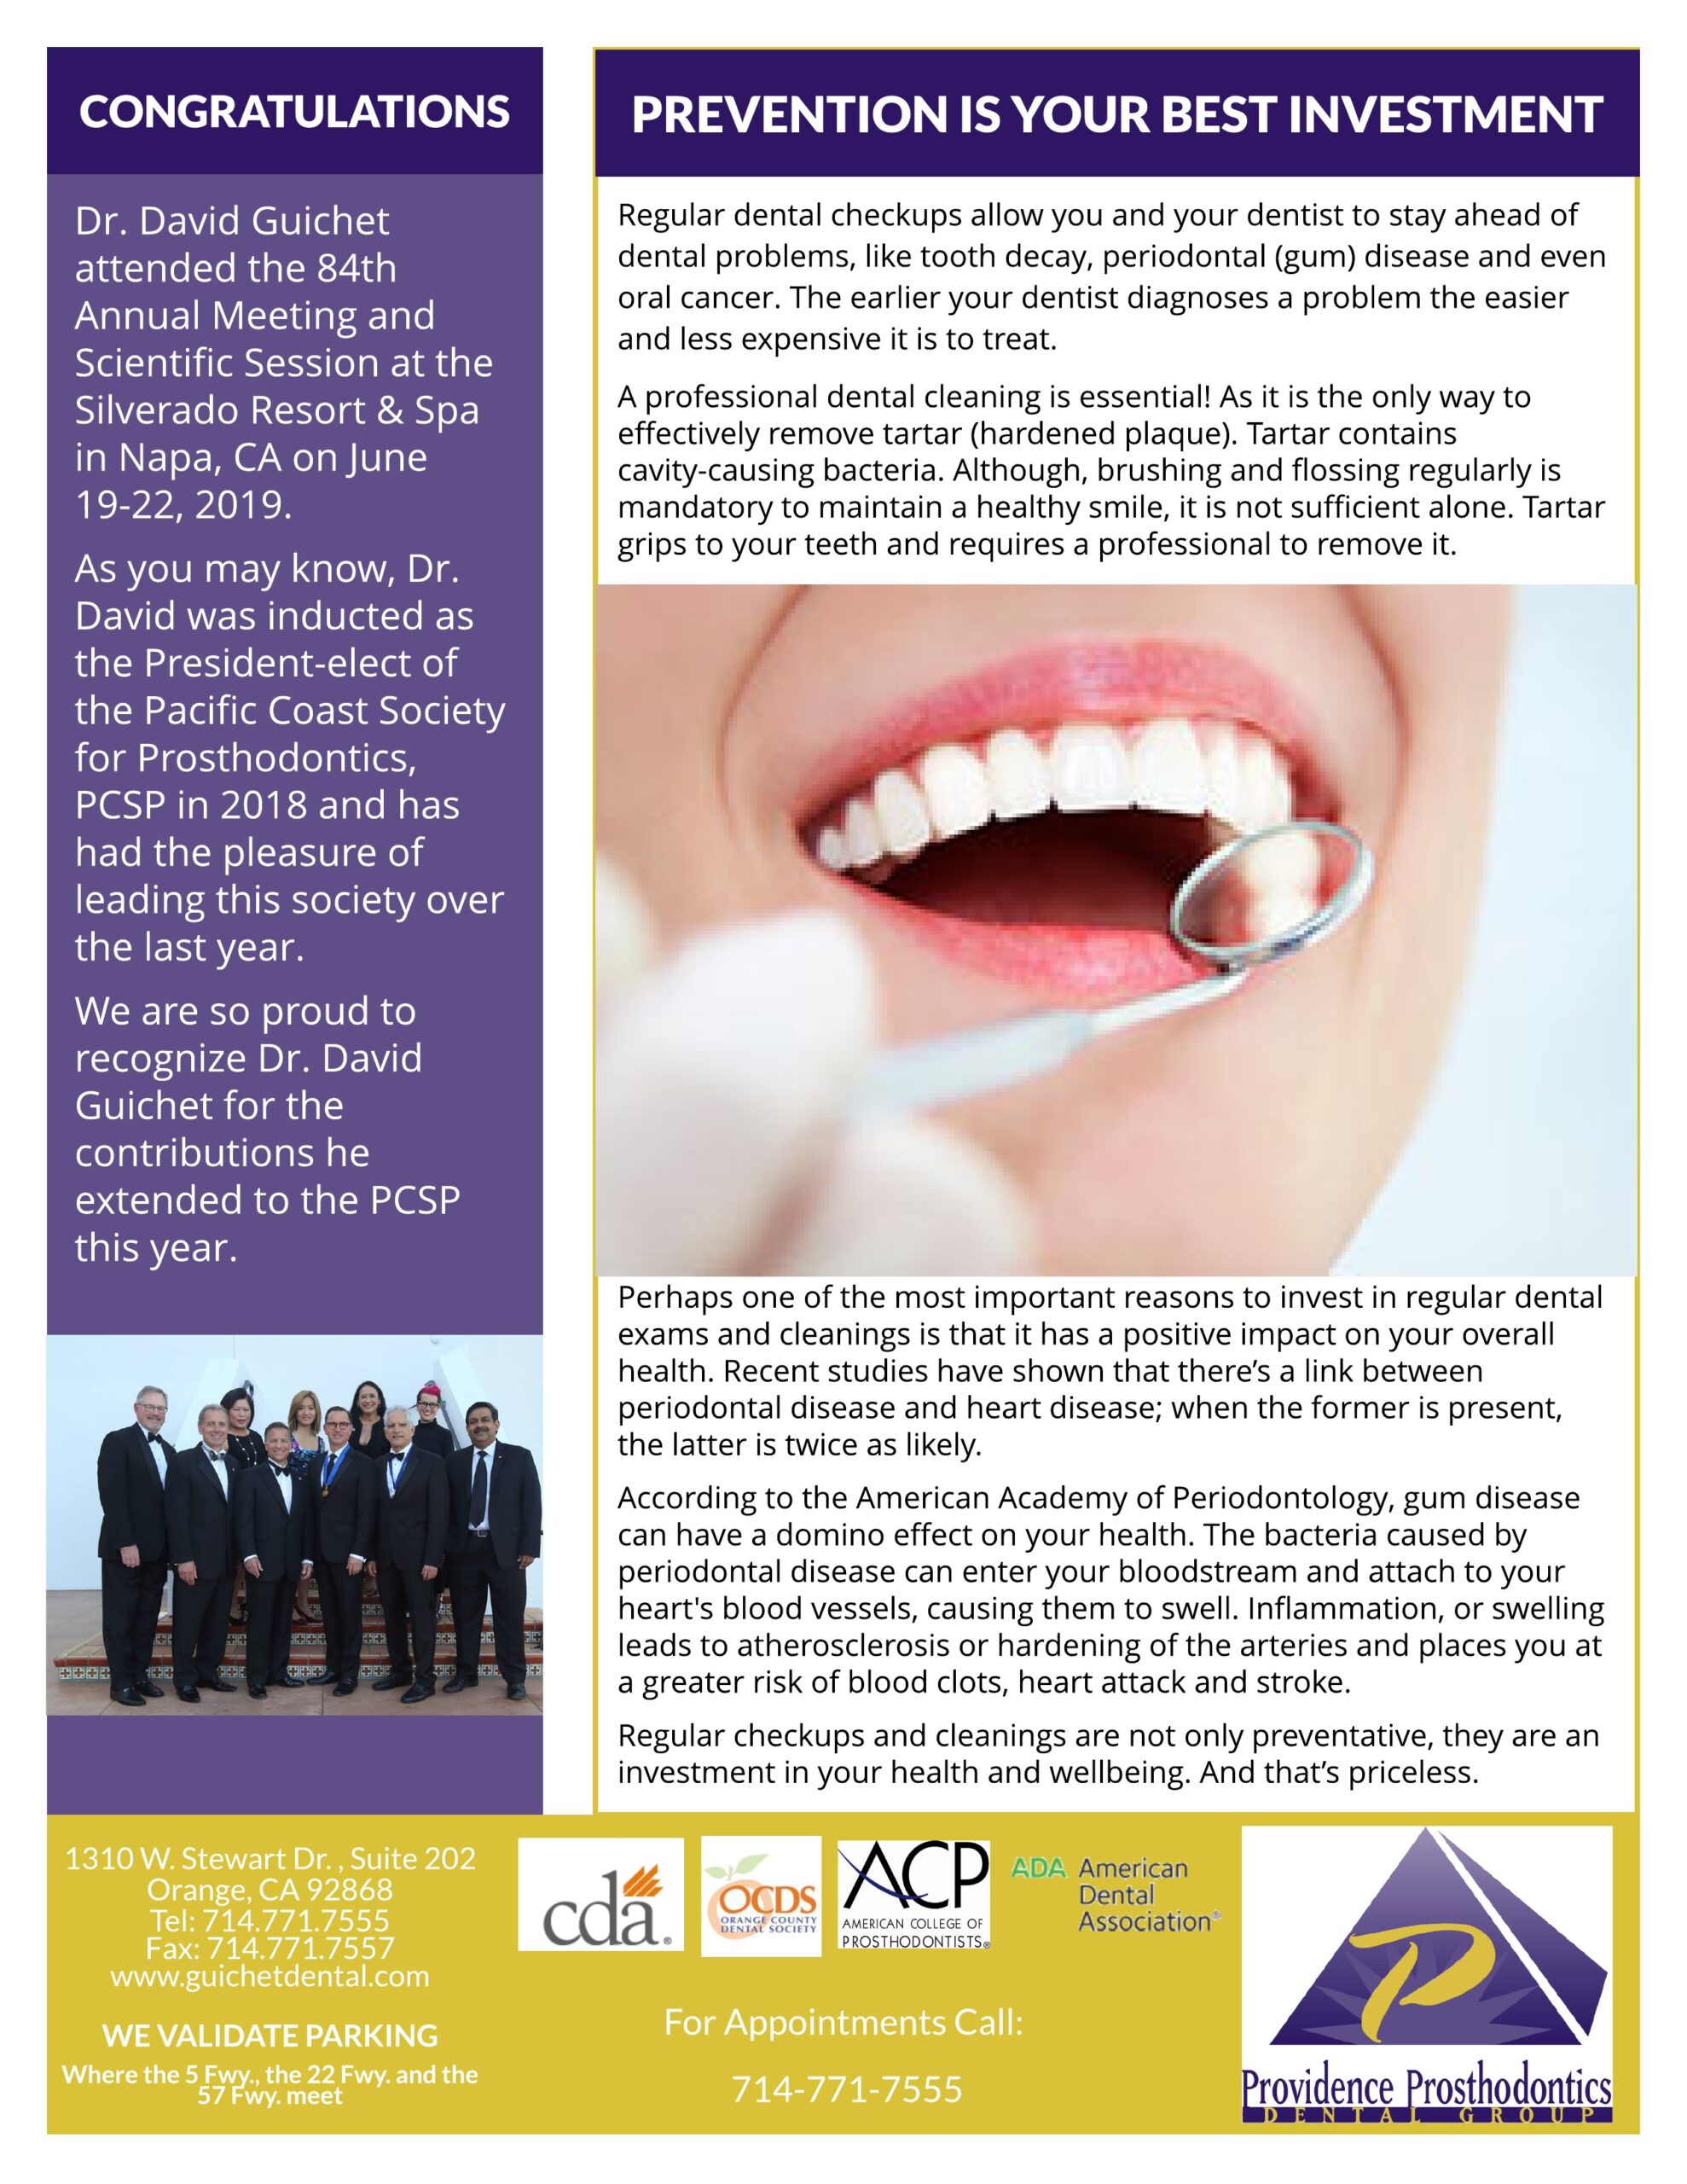 2019 Newsletter - Providence Prosthodontics Dental Group in Orange, CA